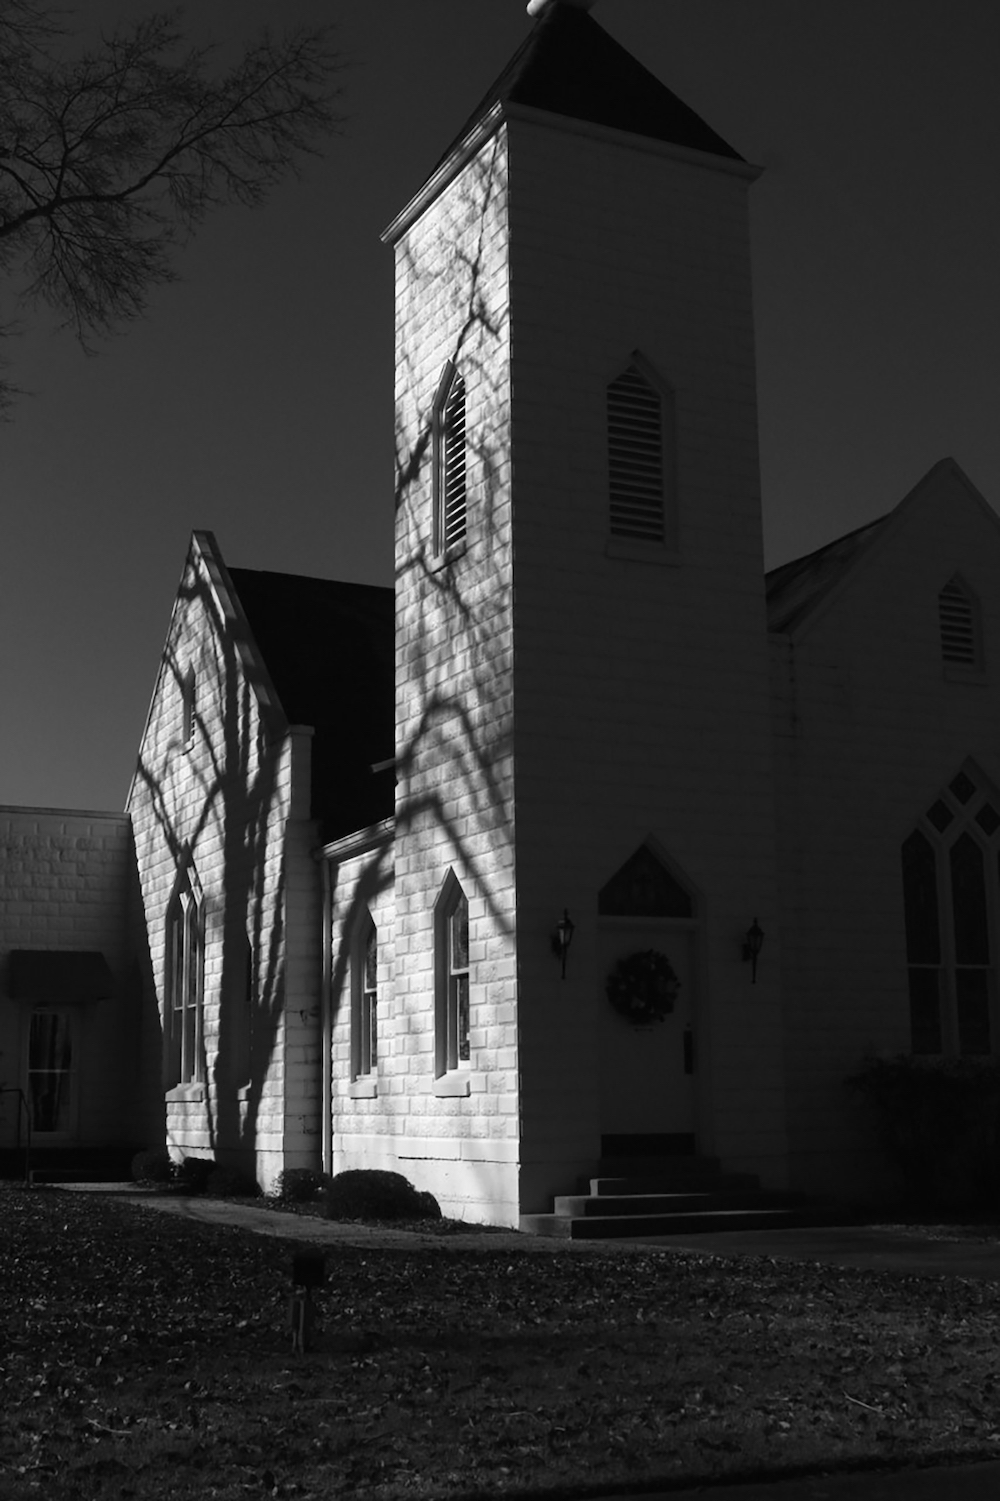 Photograph of a white church